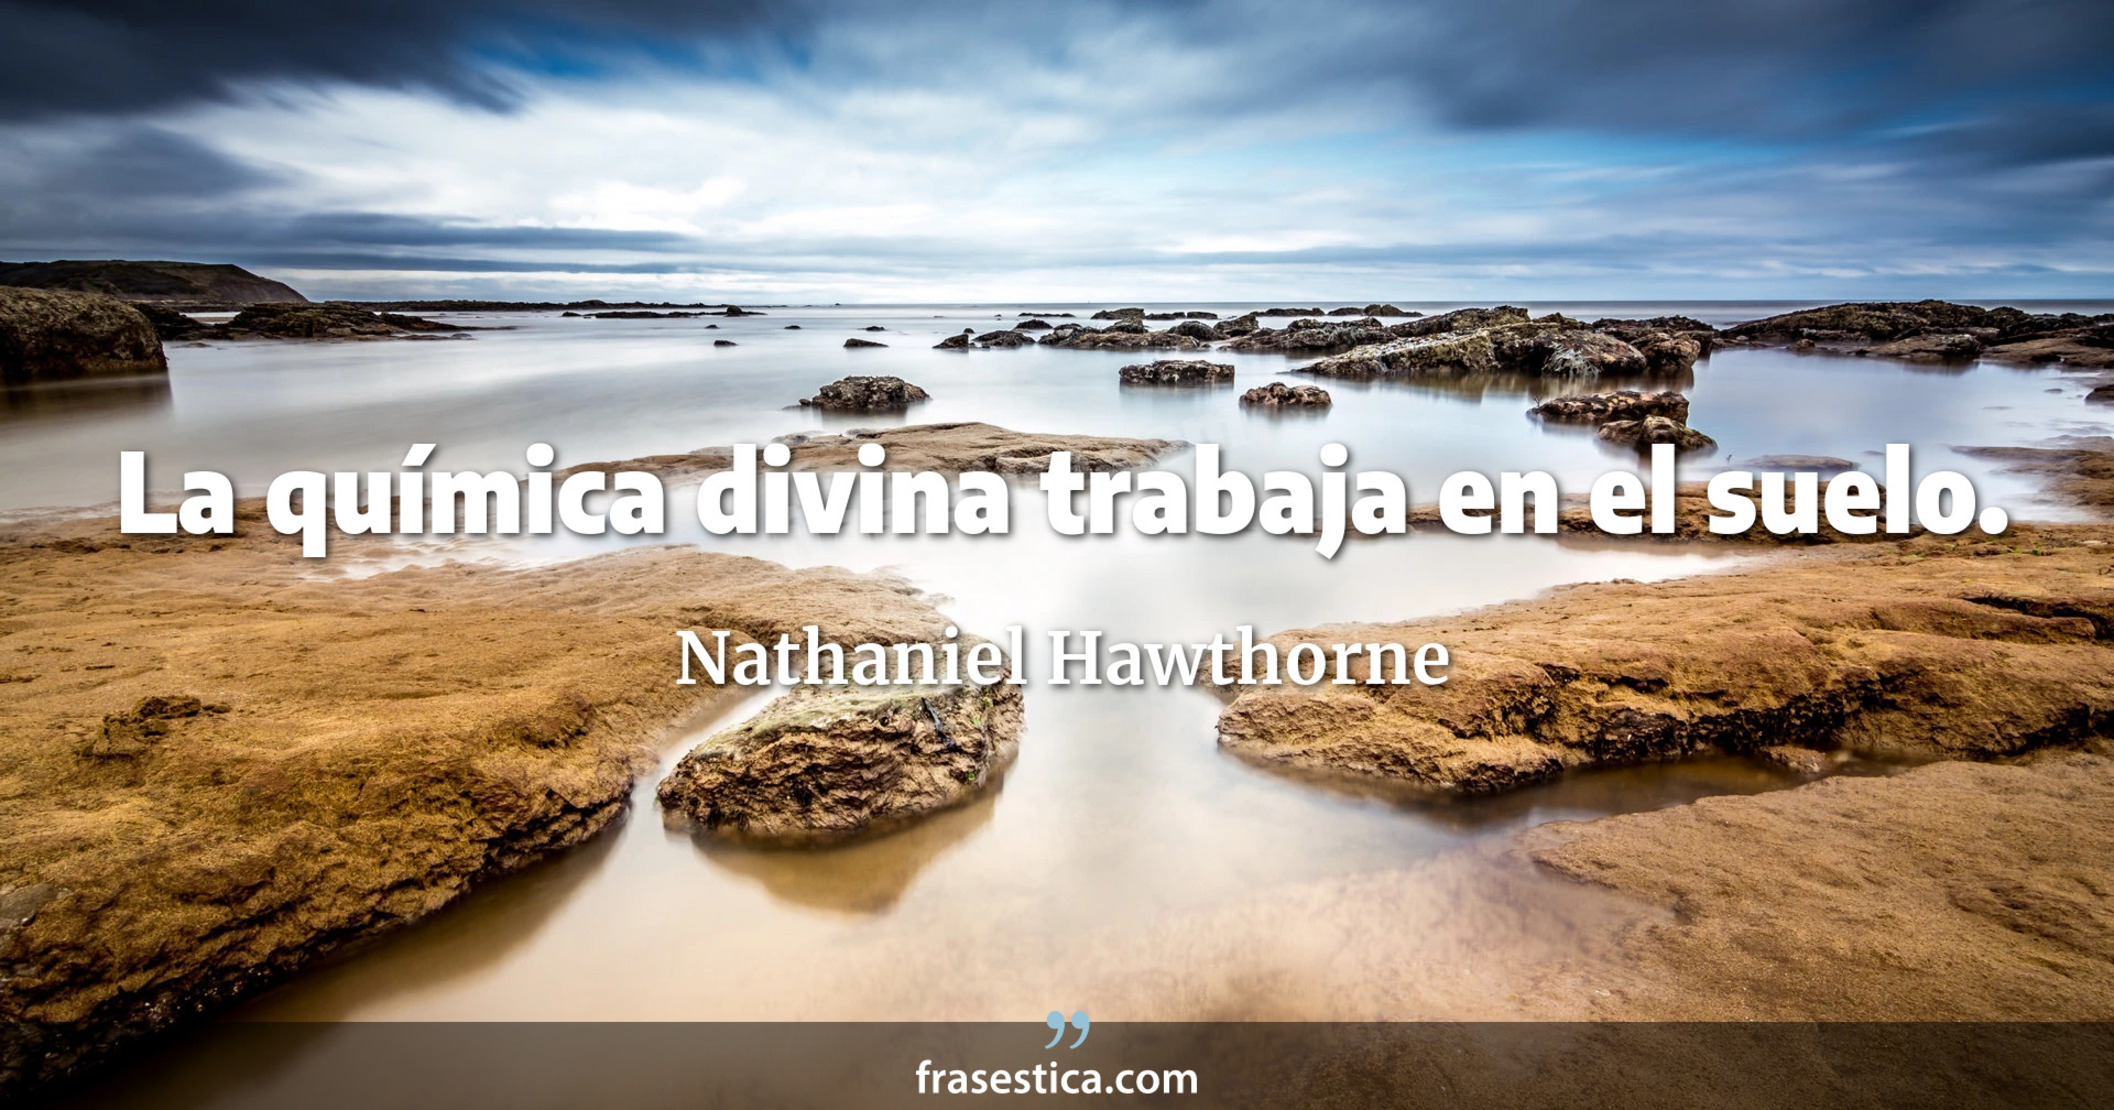 La química divina trabaja en el suelo. - Nathaniel Hawthorne